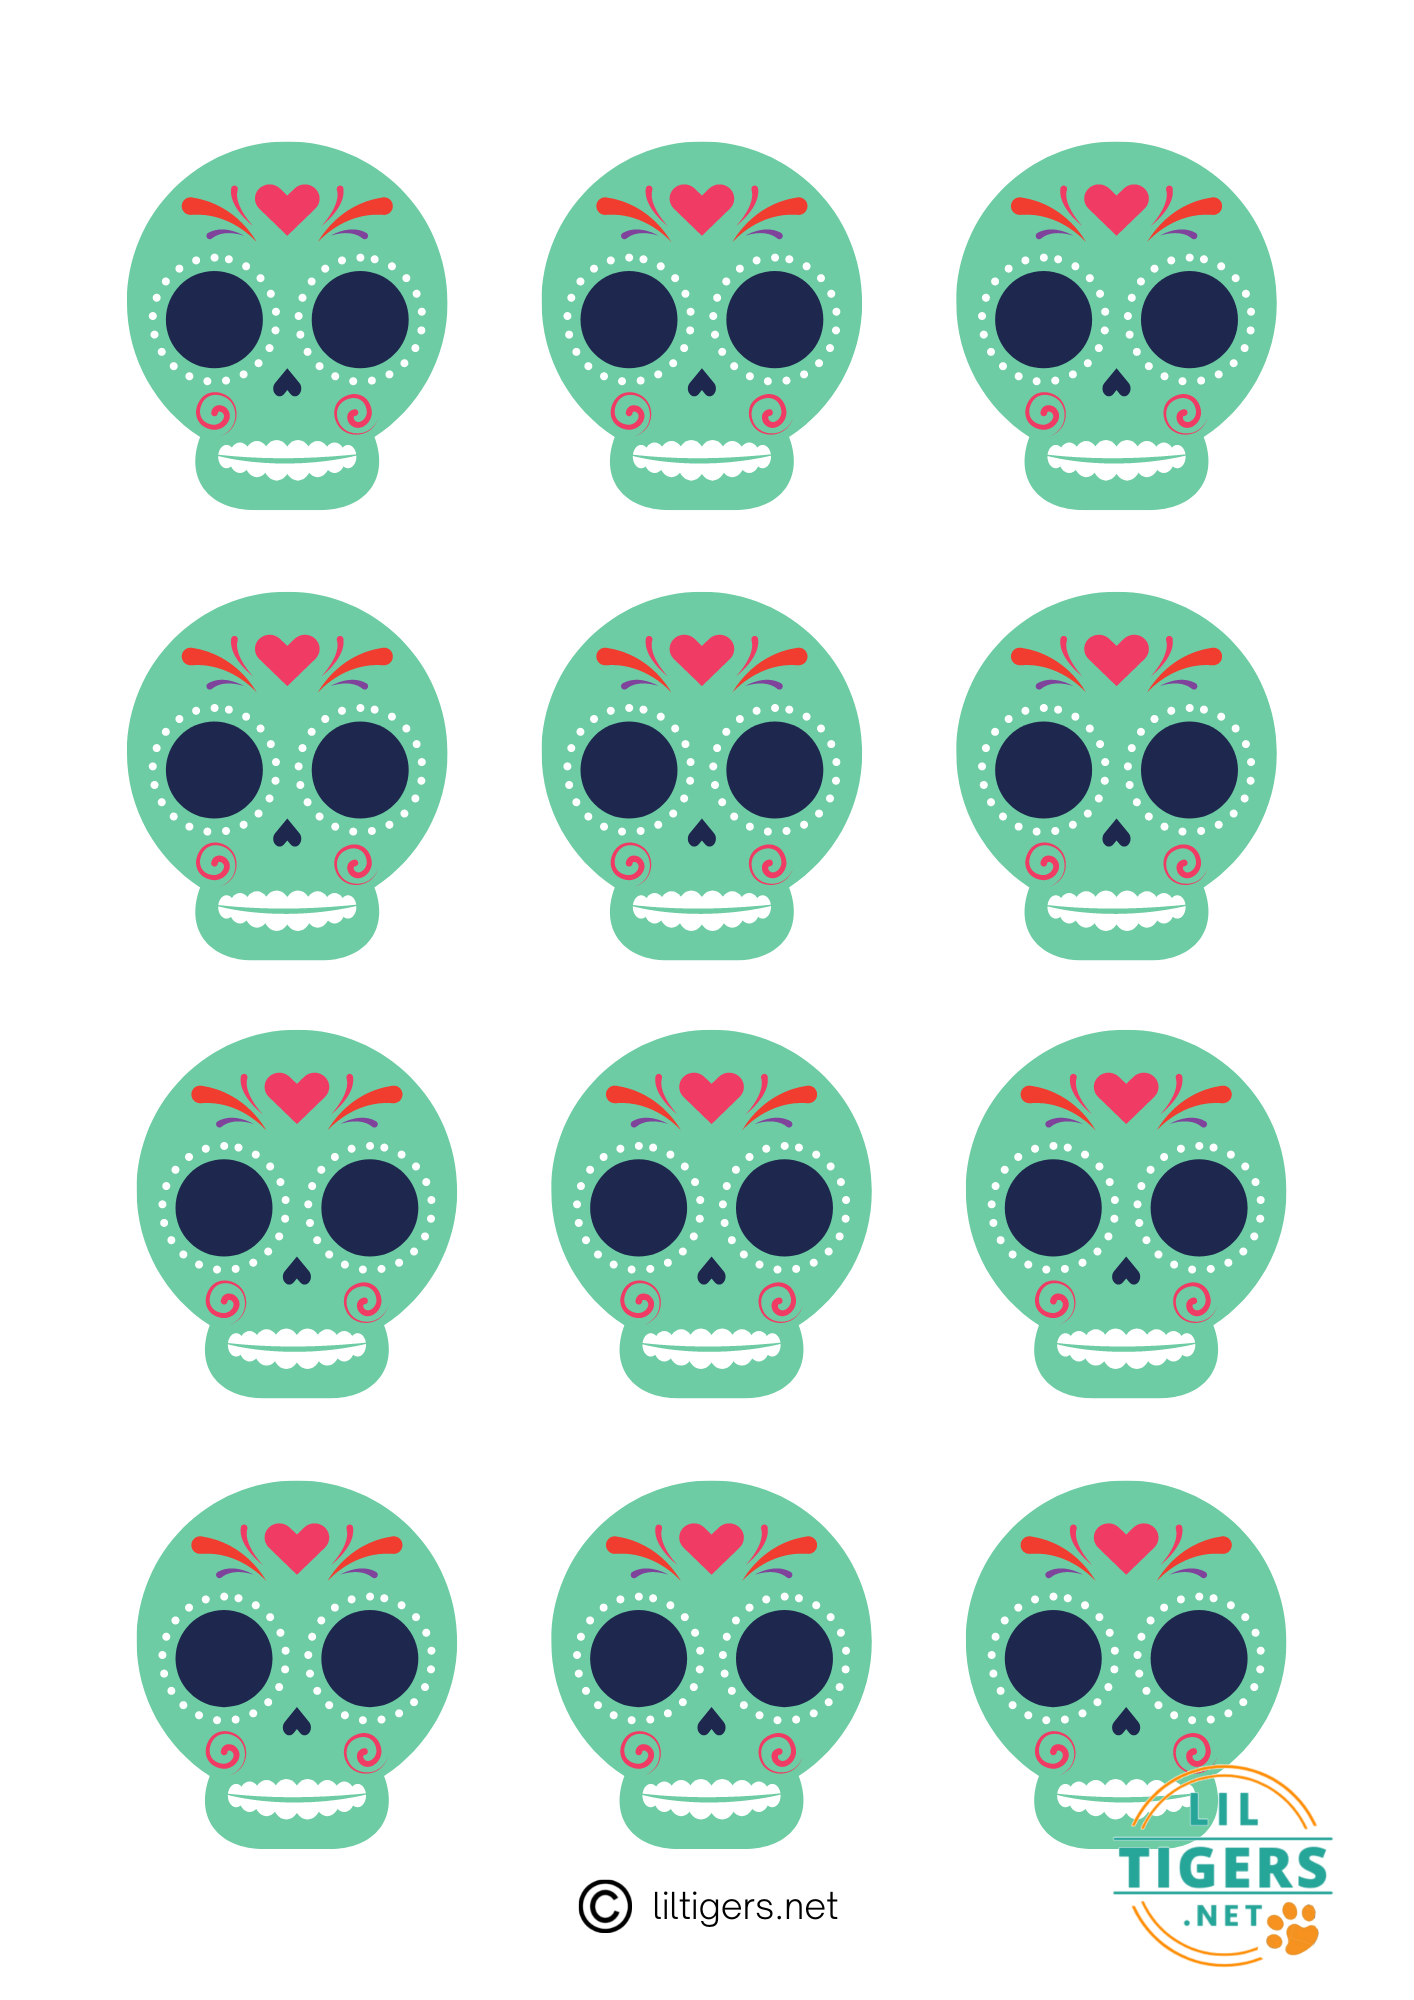 green templates of sugar skulls